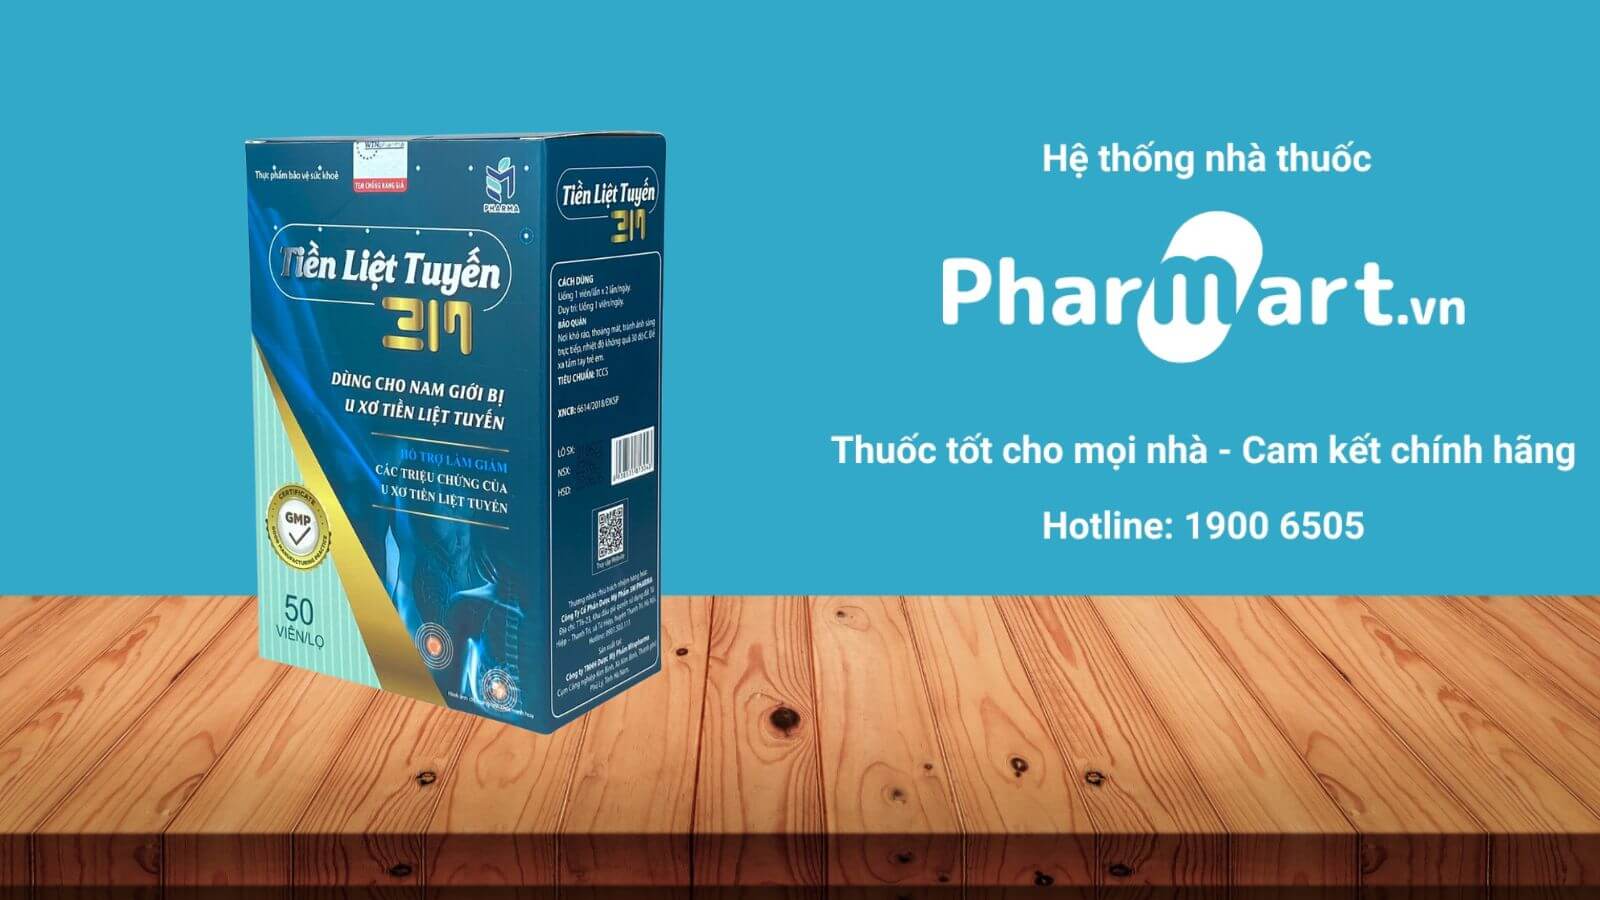 Mua Tiền liệt tuyến 3M chính hãng tại Pharmart.vn